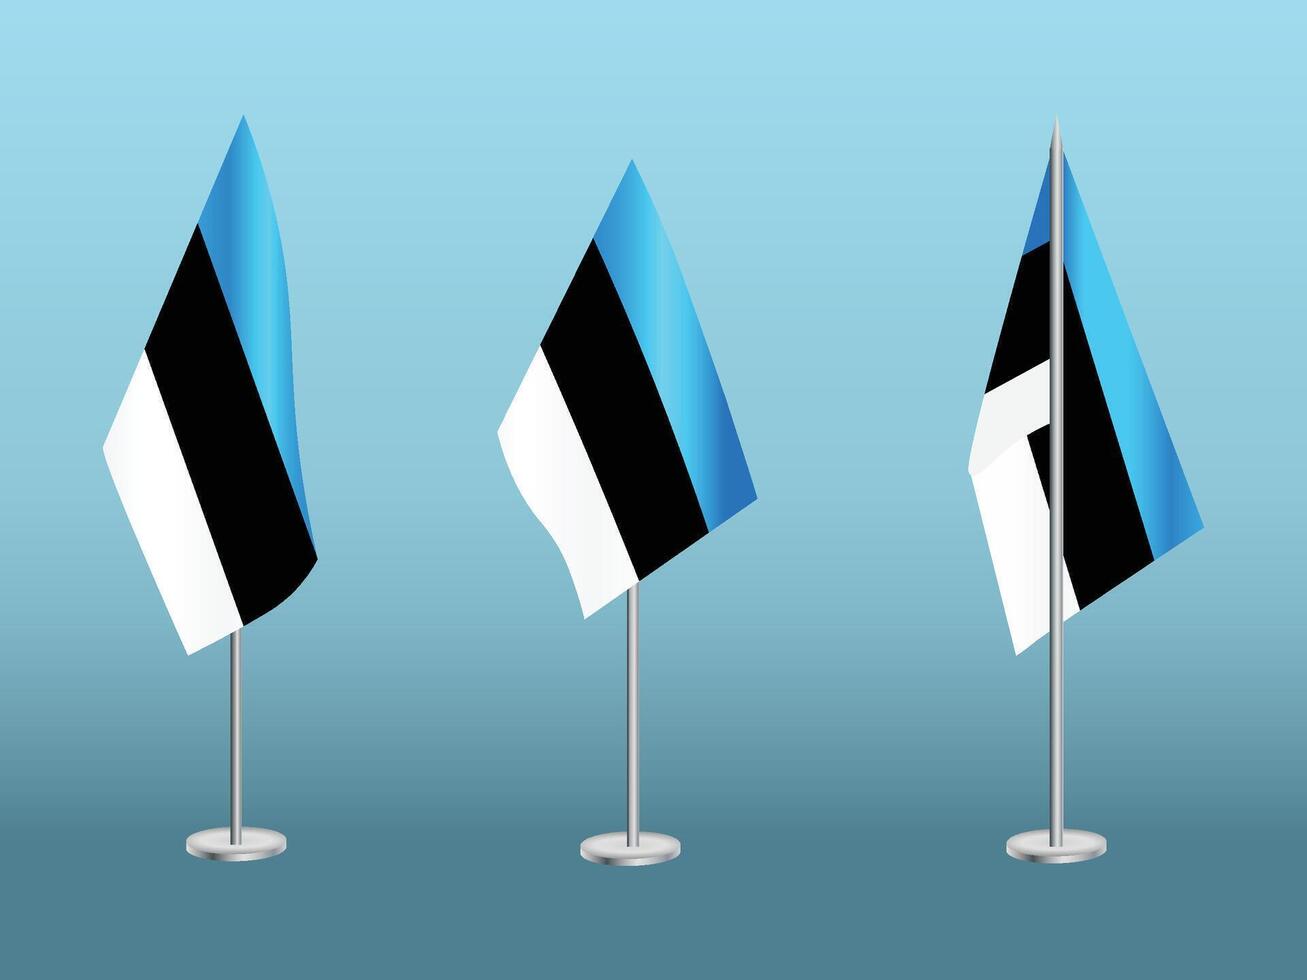 bandera de Estonia con plata conjunto de polos de Estonia nacional bandera vector